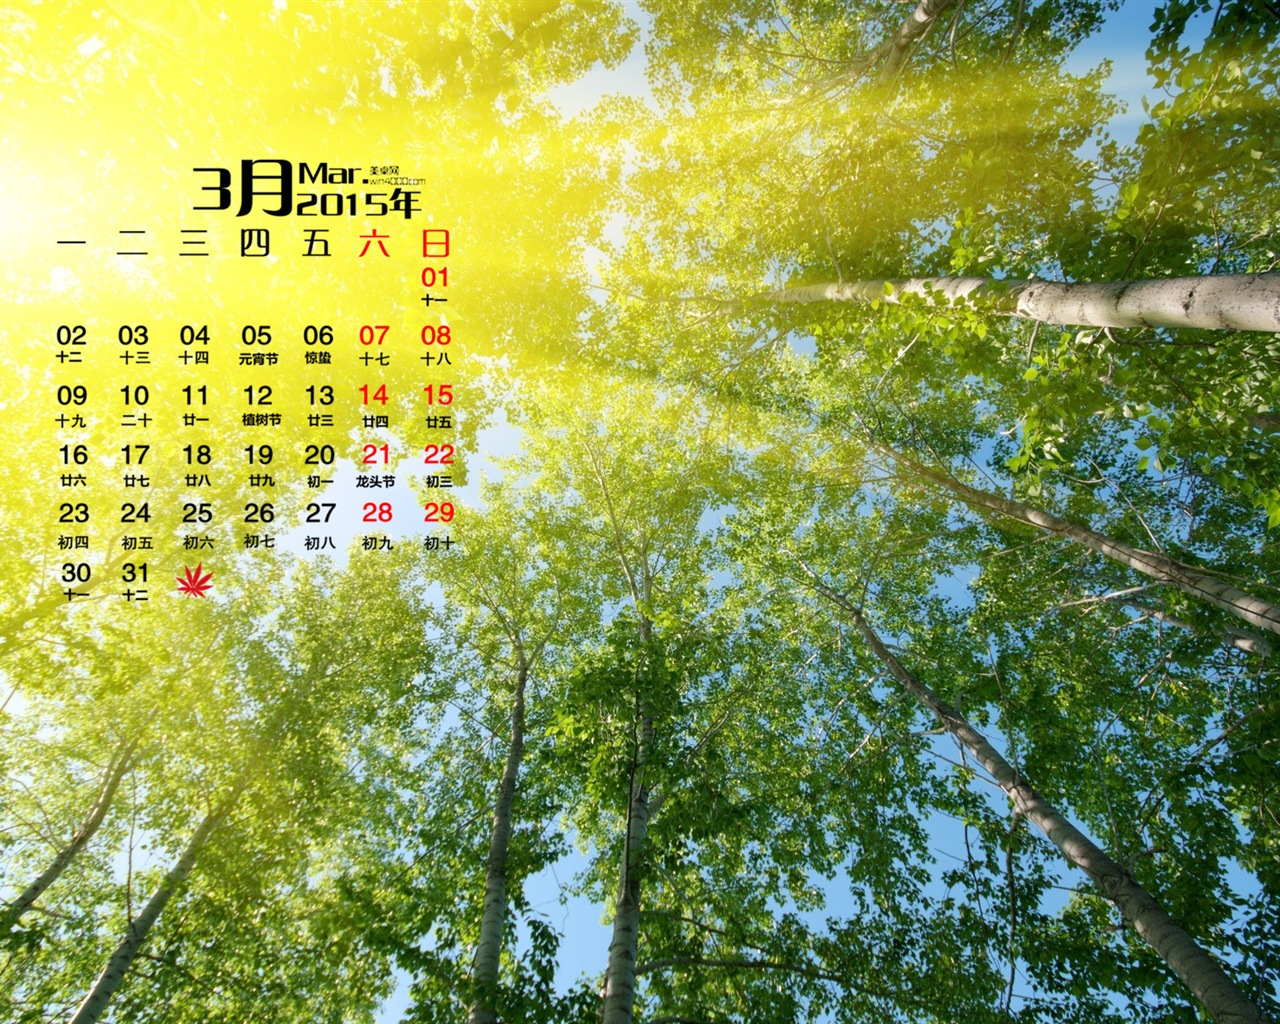 03. 2015 Kalendář tapety (1) #20 - 1280x1024